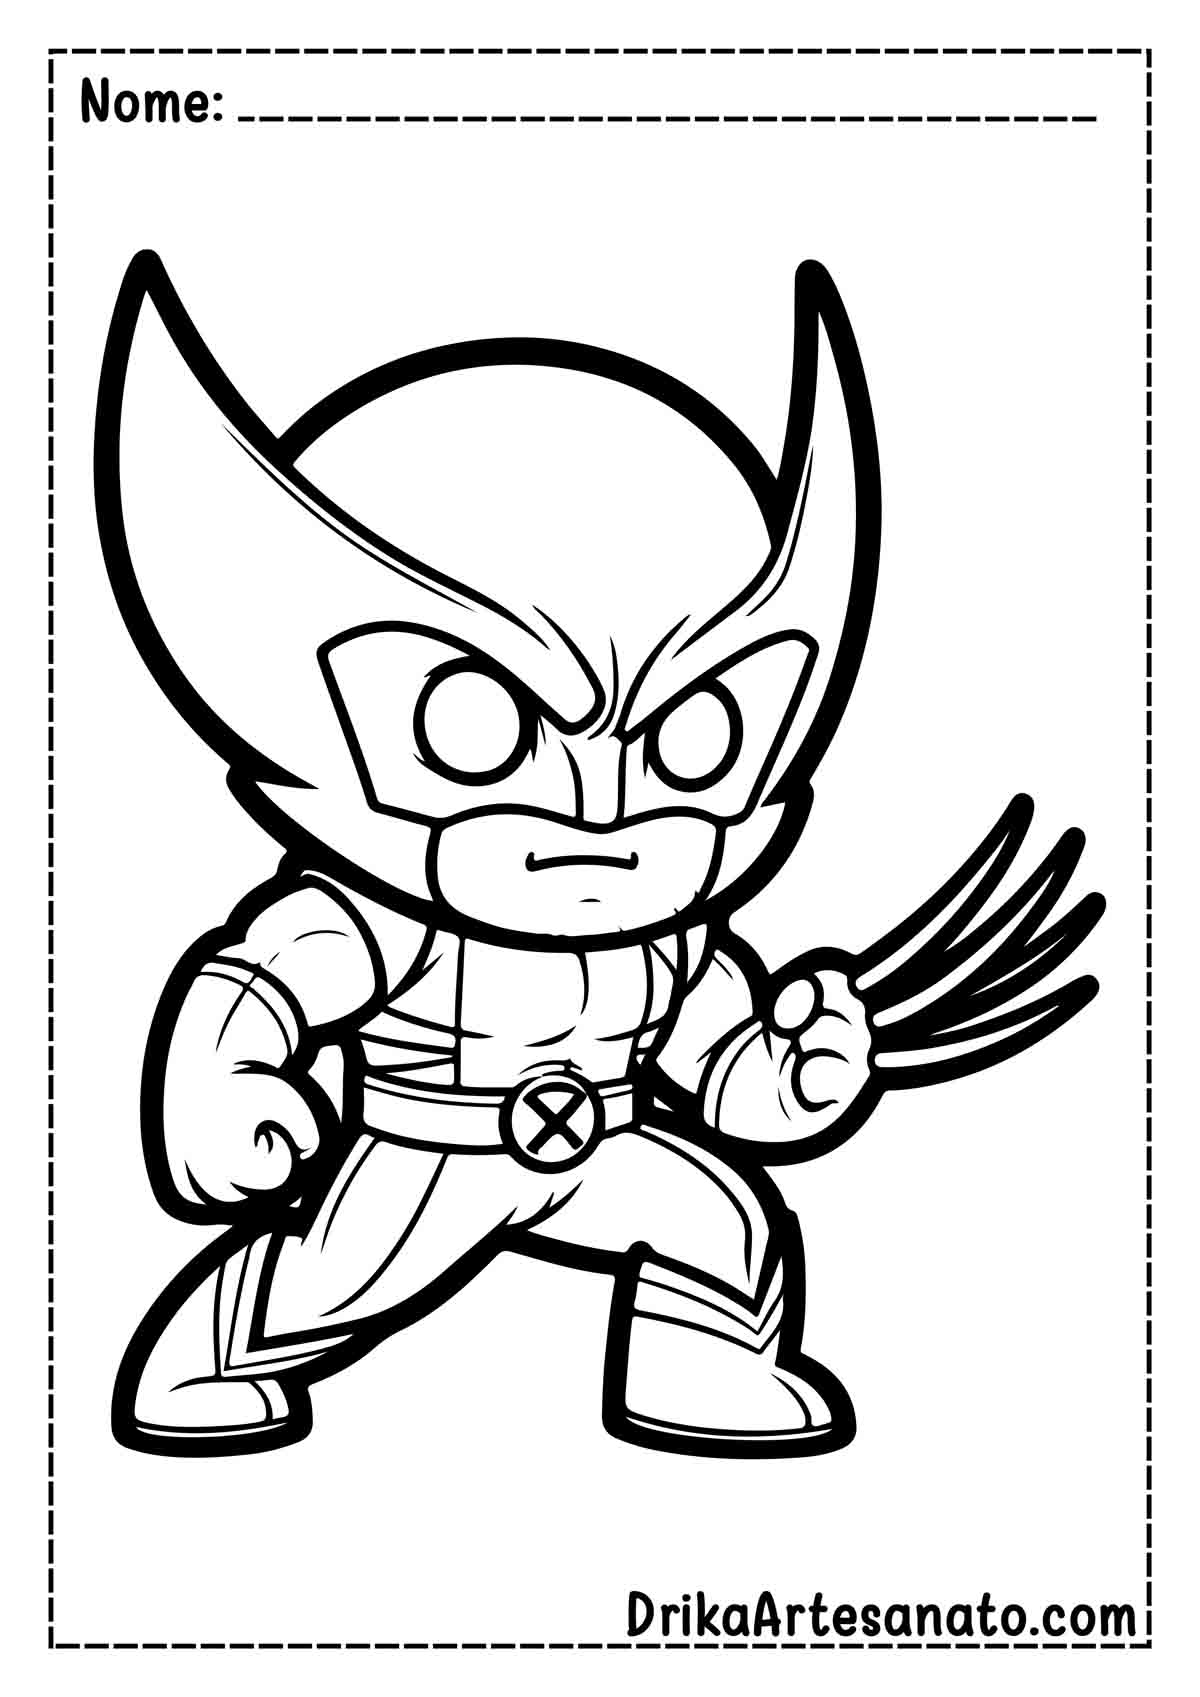 Desenho do Wolverine Fácil para Imprimir